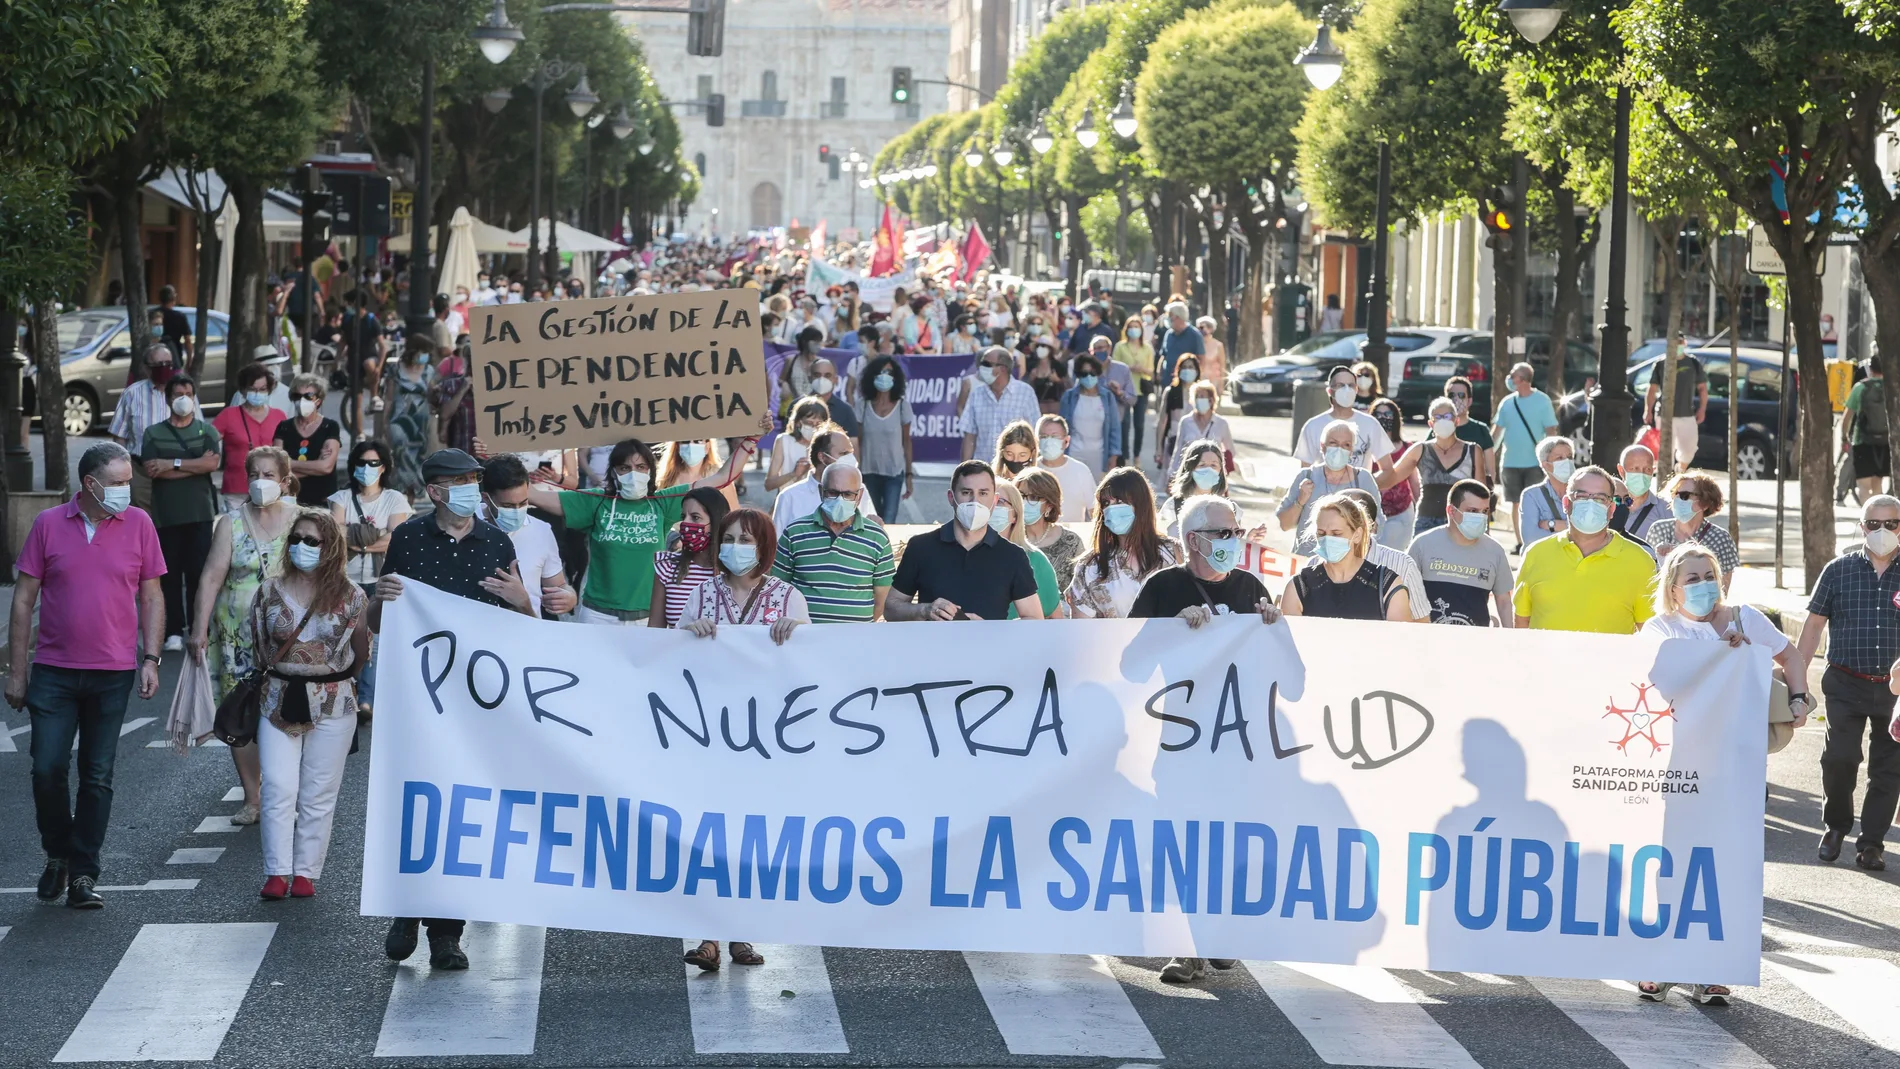 Manifestación en defensa del sistema público sanitario organizada por la Plataforma Social en Defensa de la Sanidad Pública de León, a 13 de enero de 2022